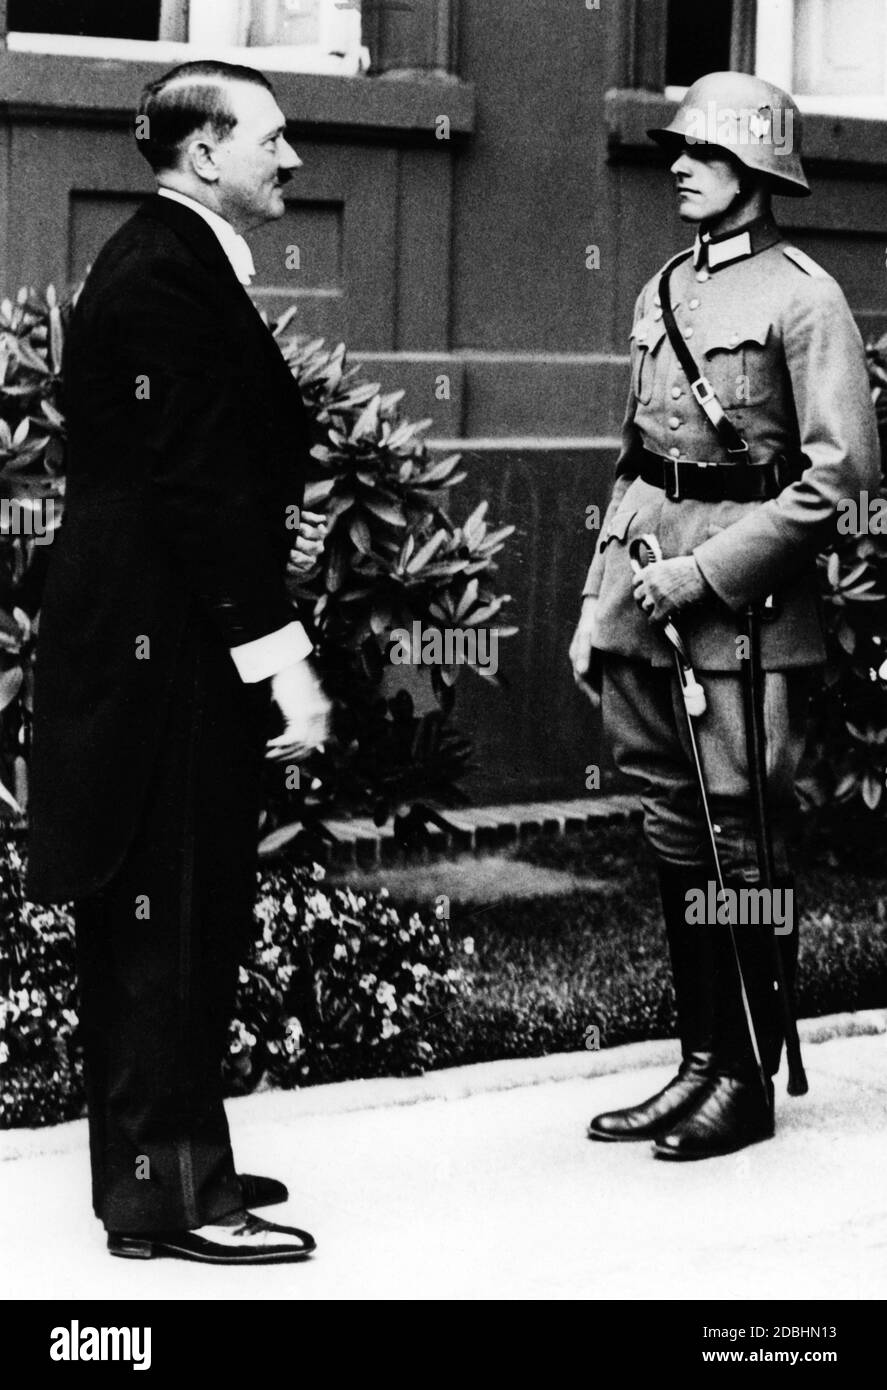 Hitler in cappotto durante la ricezione diplomatica il giorno di Capodanno  nel 1935 Foto stock - Alamy